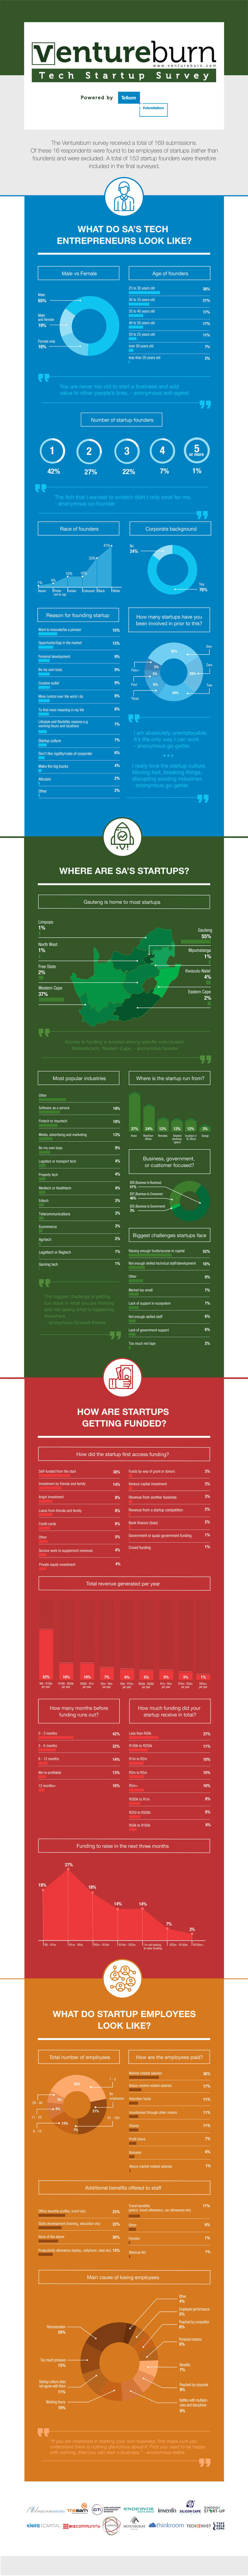 ventureburn-infographic_updated